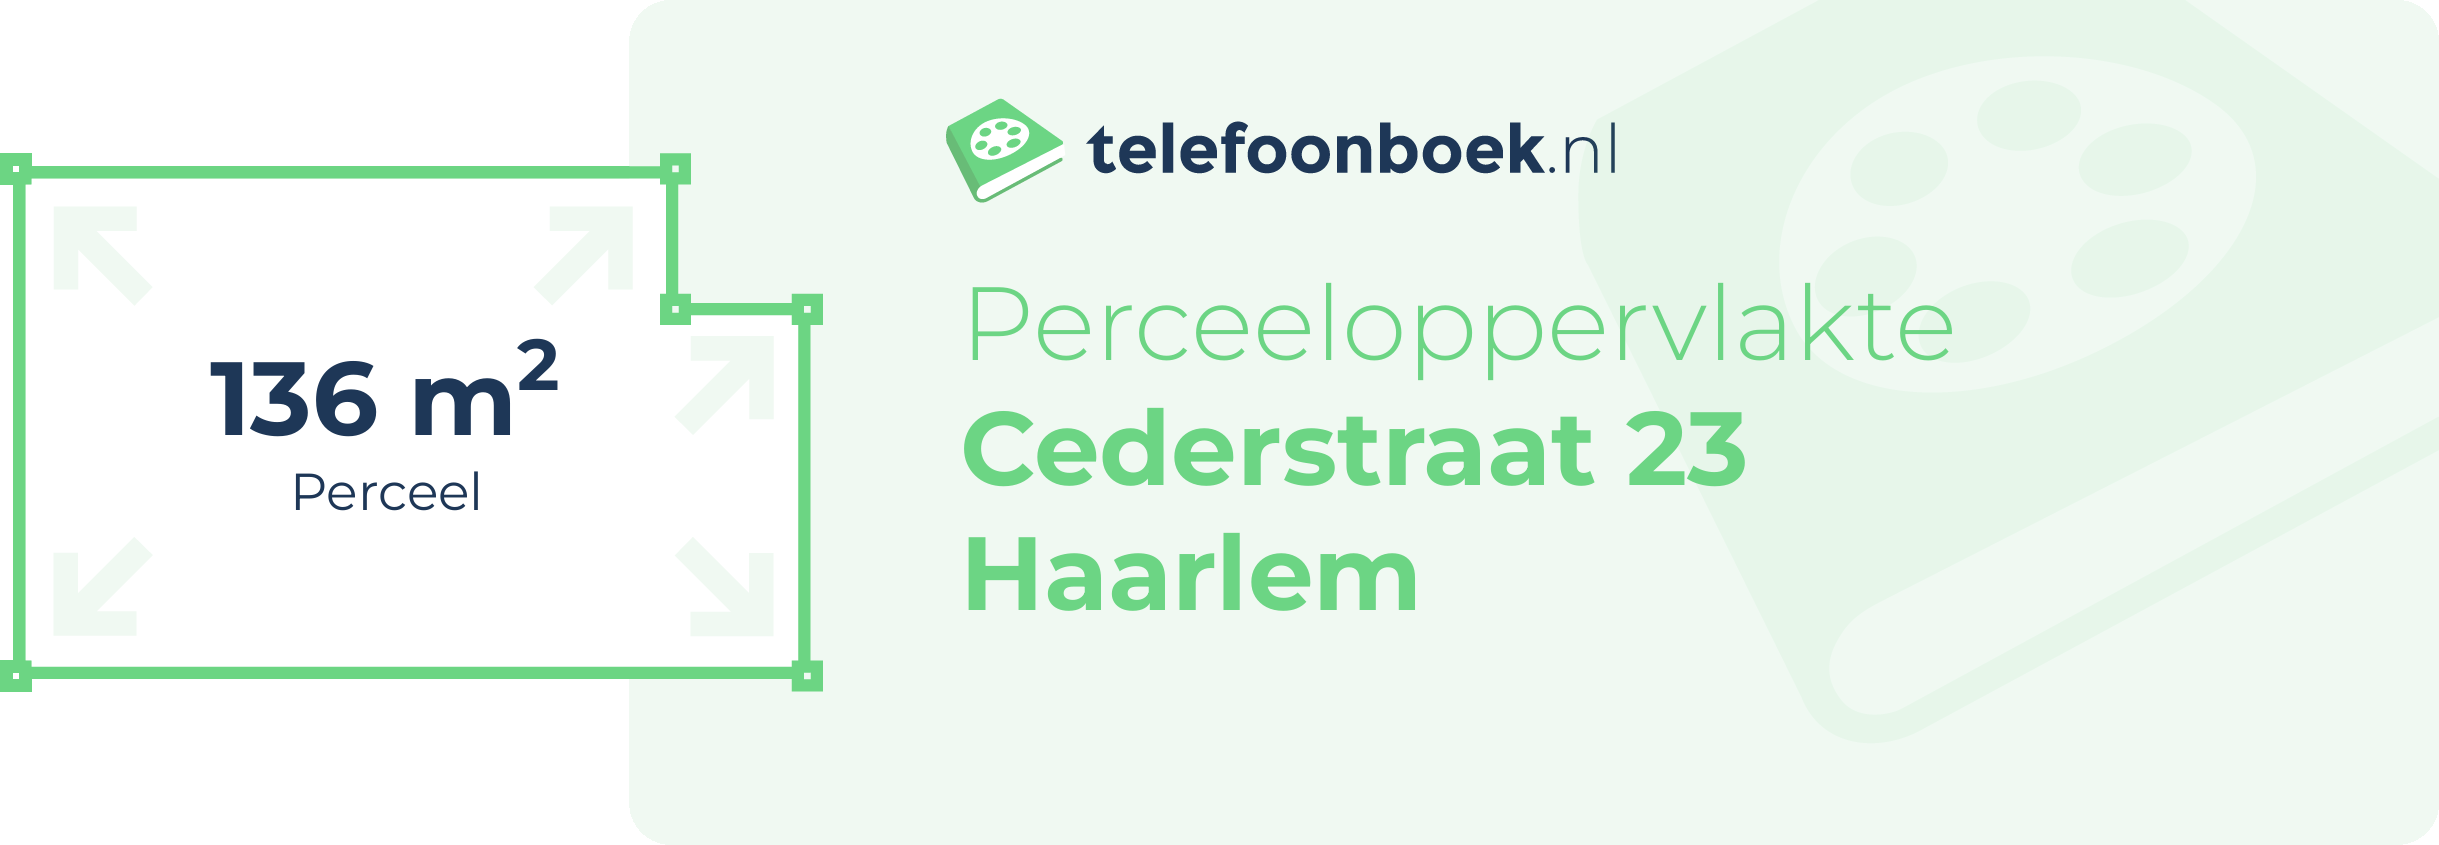 Perceeloppervlakte Cederstraat 23 Haarlem